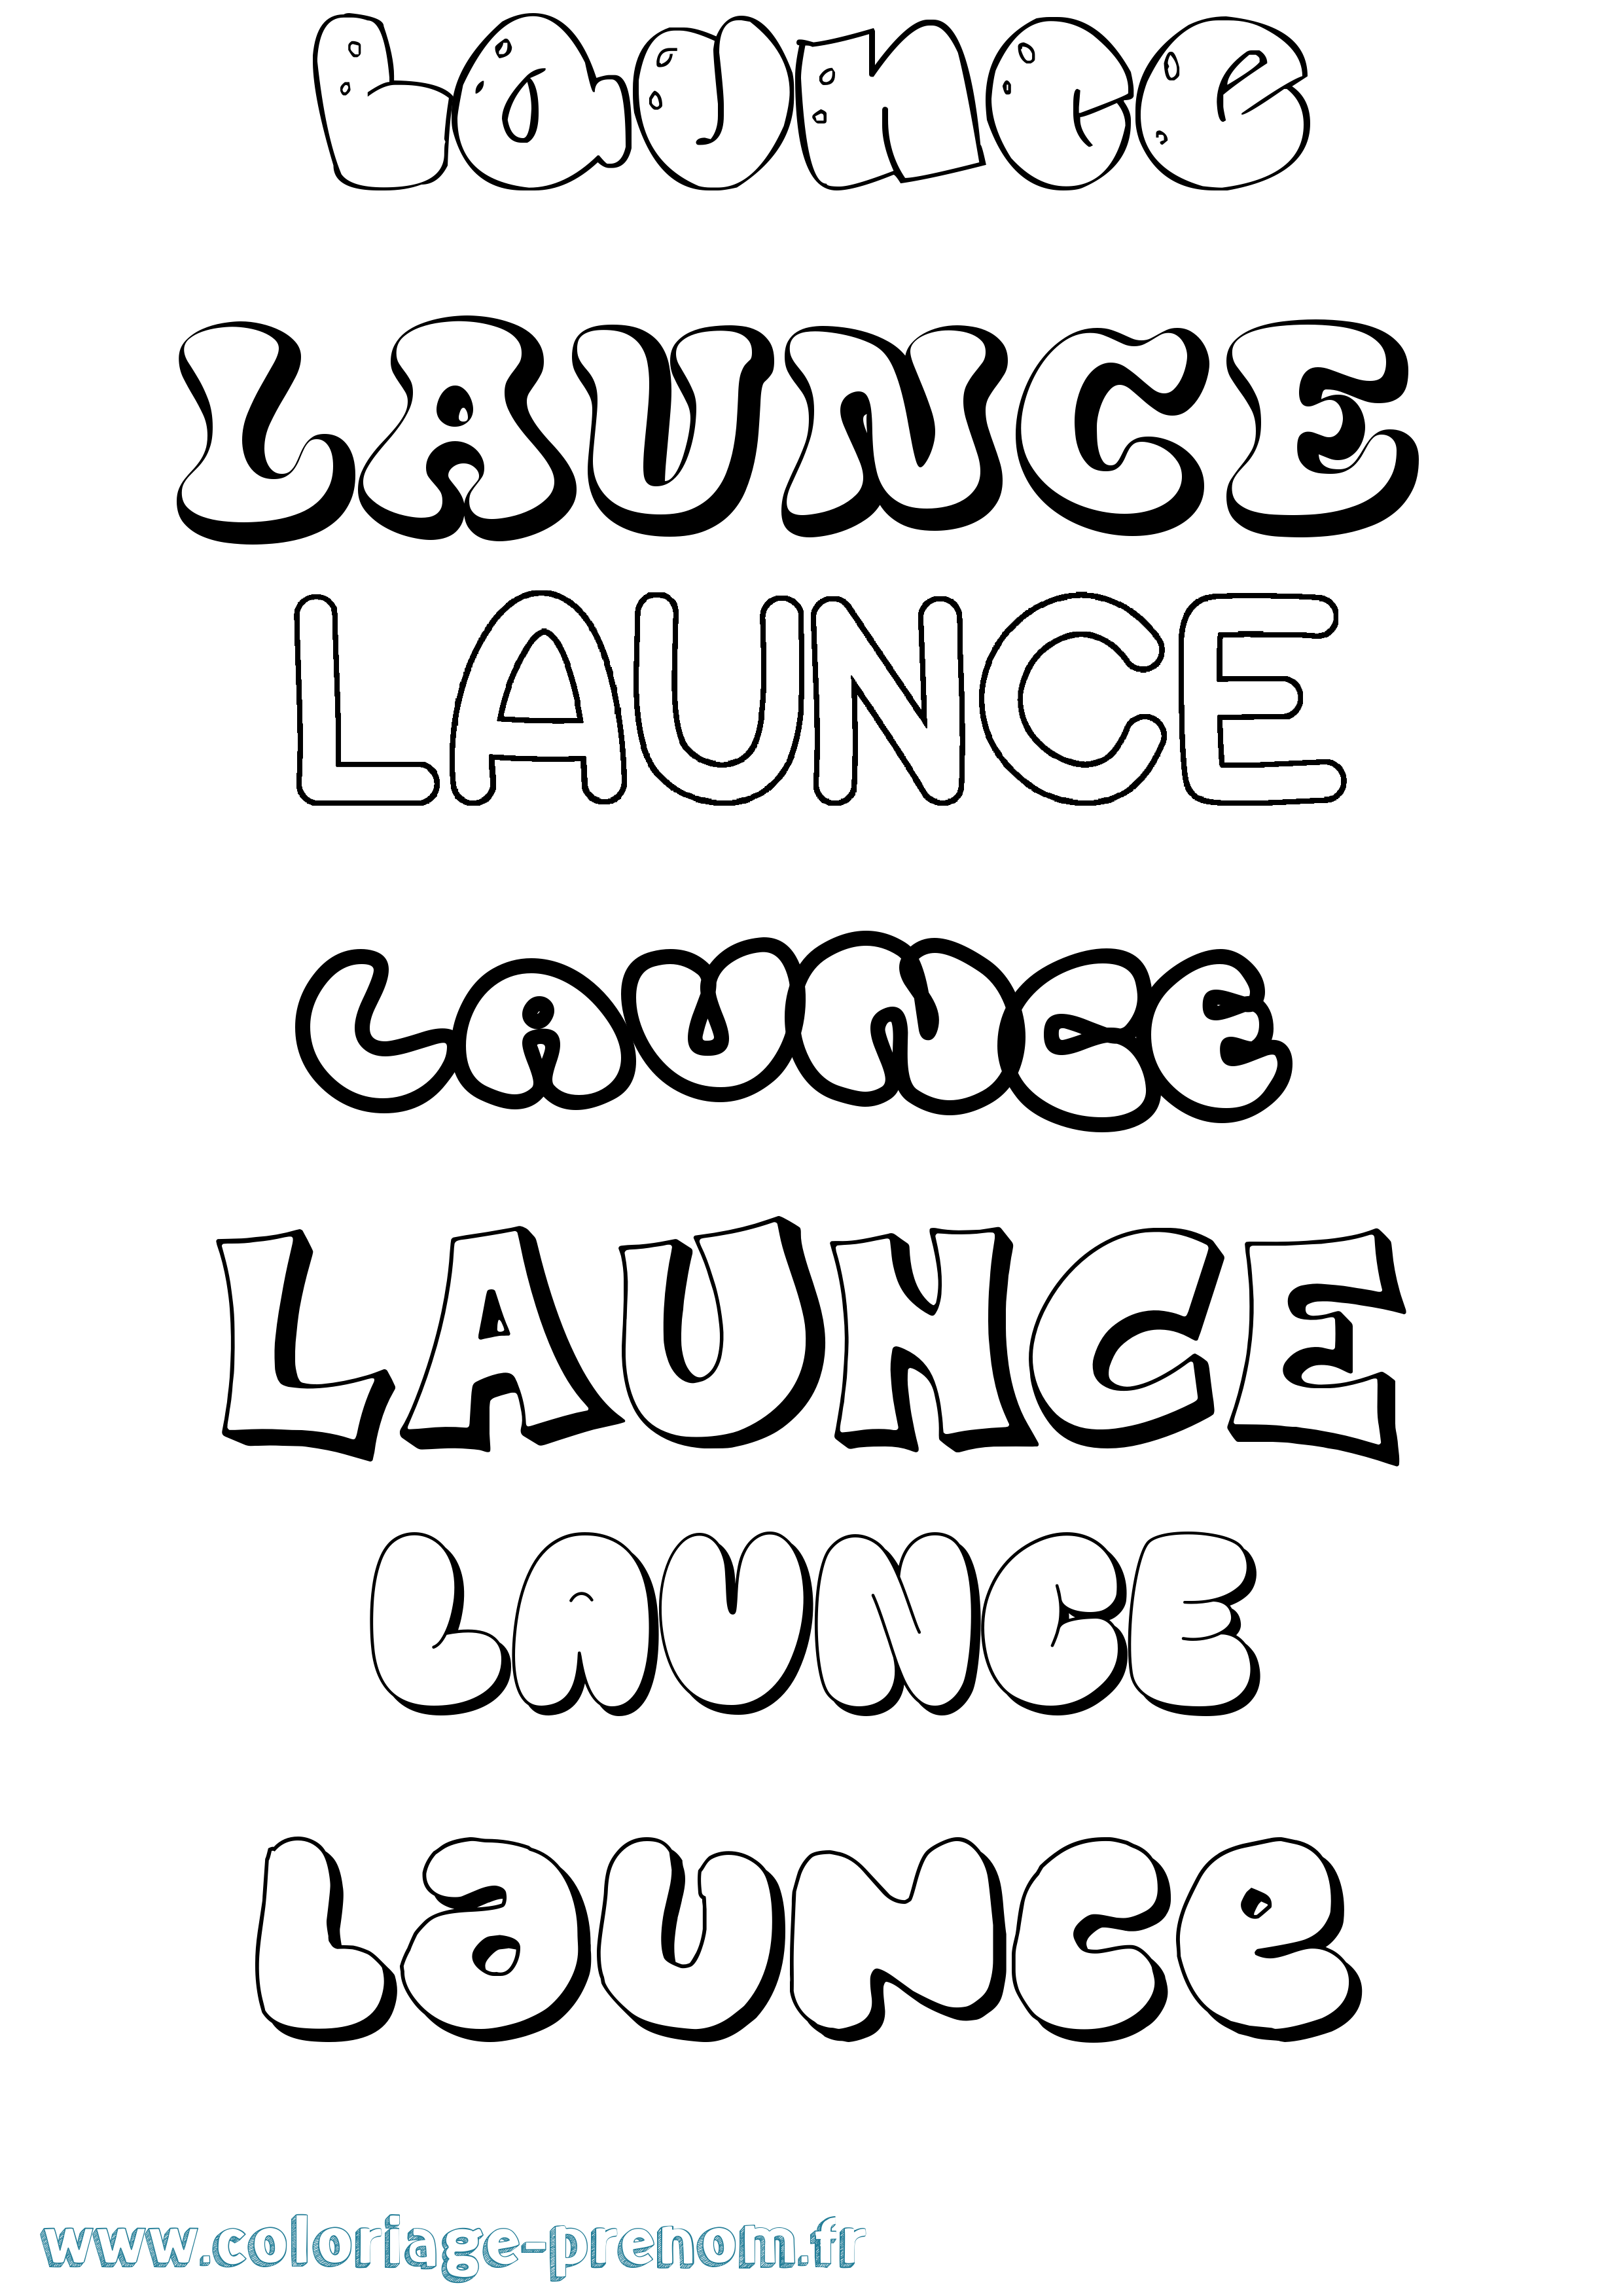 Coloriage prénom Launce Bubble